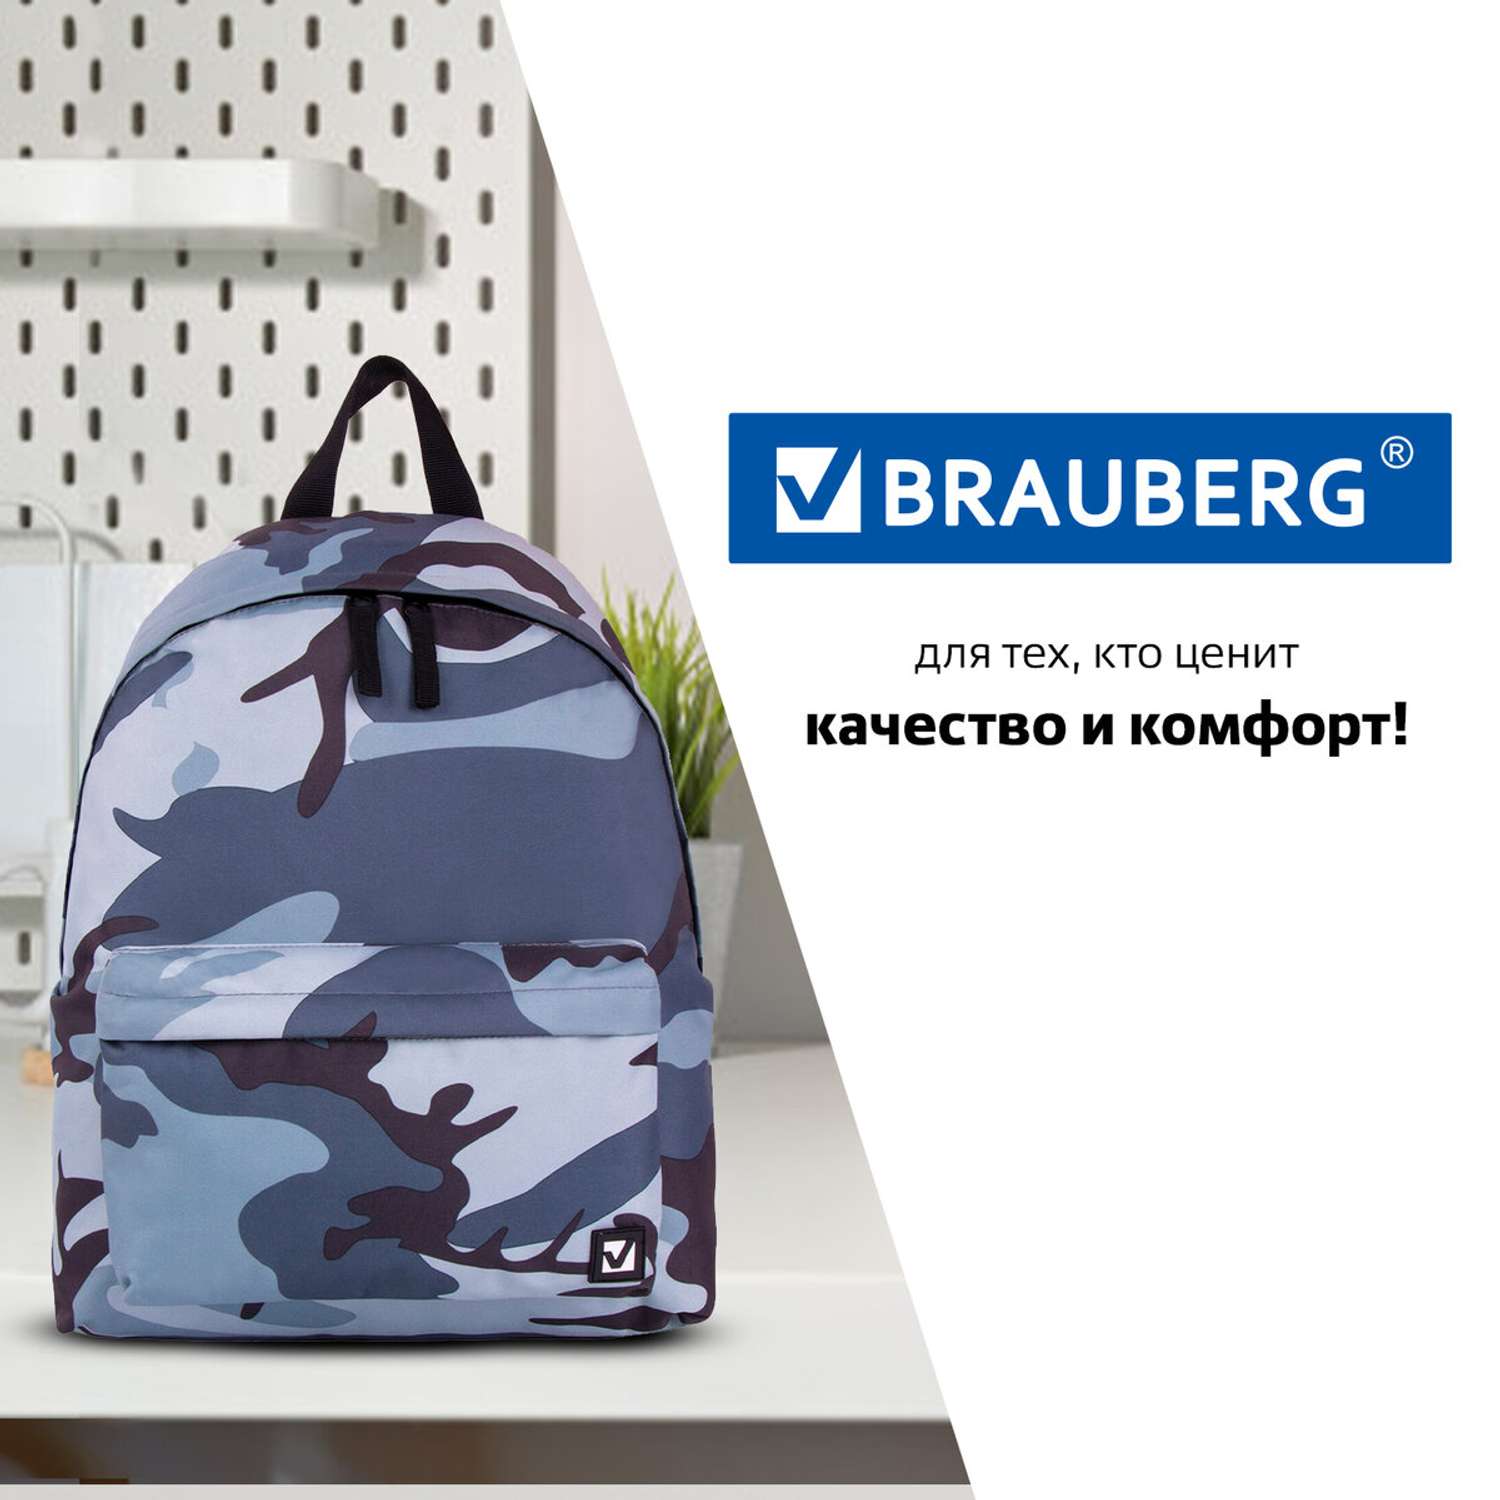 Рюкзак Brauberg универсальный сити-формат Серый камуфляж 41х32х14 см - фото 10